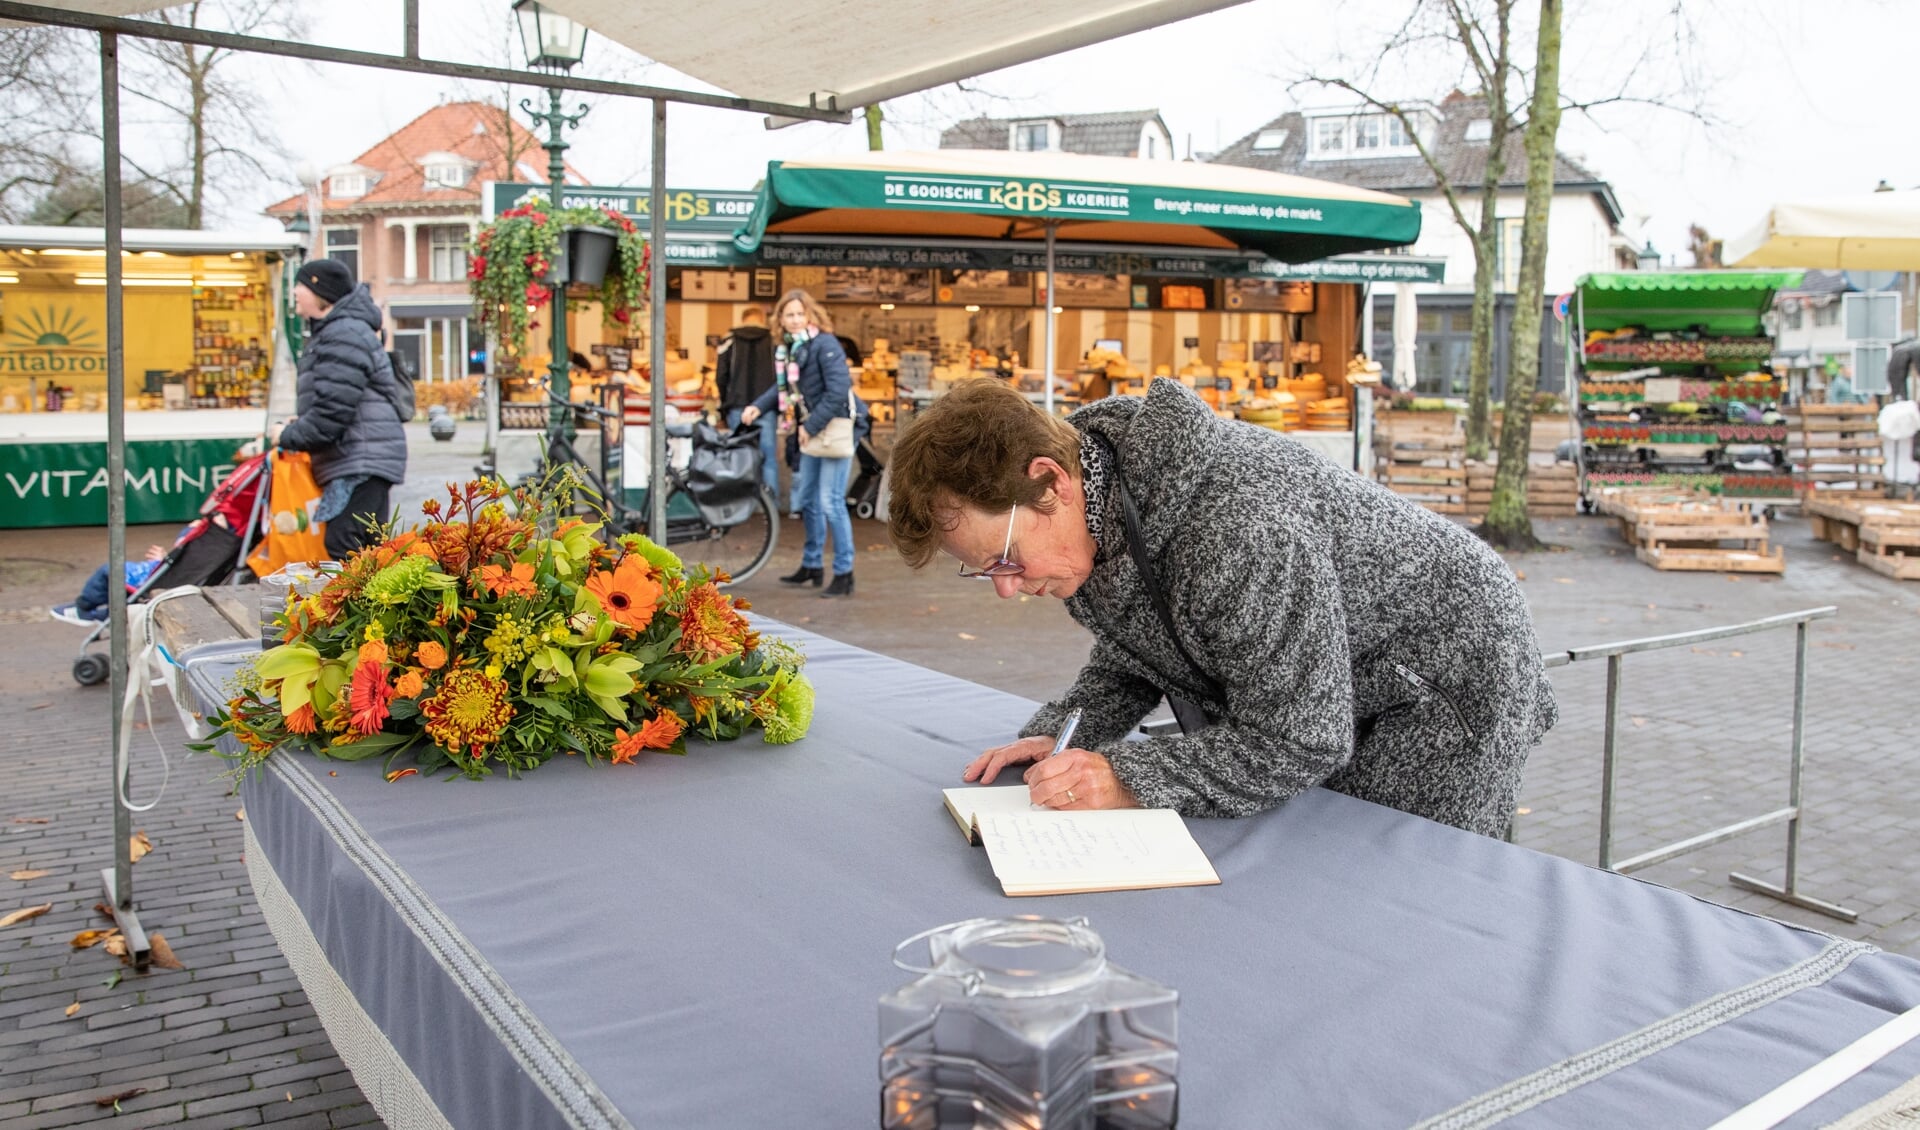 Baarnse marktkooplui hadden afgelopen dinsdag een mooi bloemstuk op de kraam van marktman Elbert Lamers gelegd waar trouwe klanten het condoleanceboek konden tekenen.
